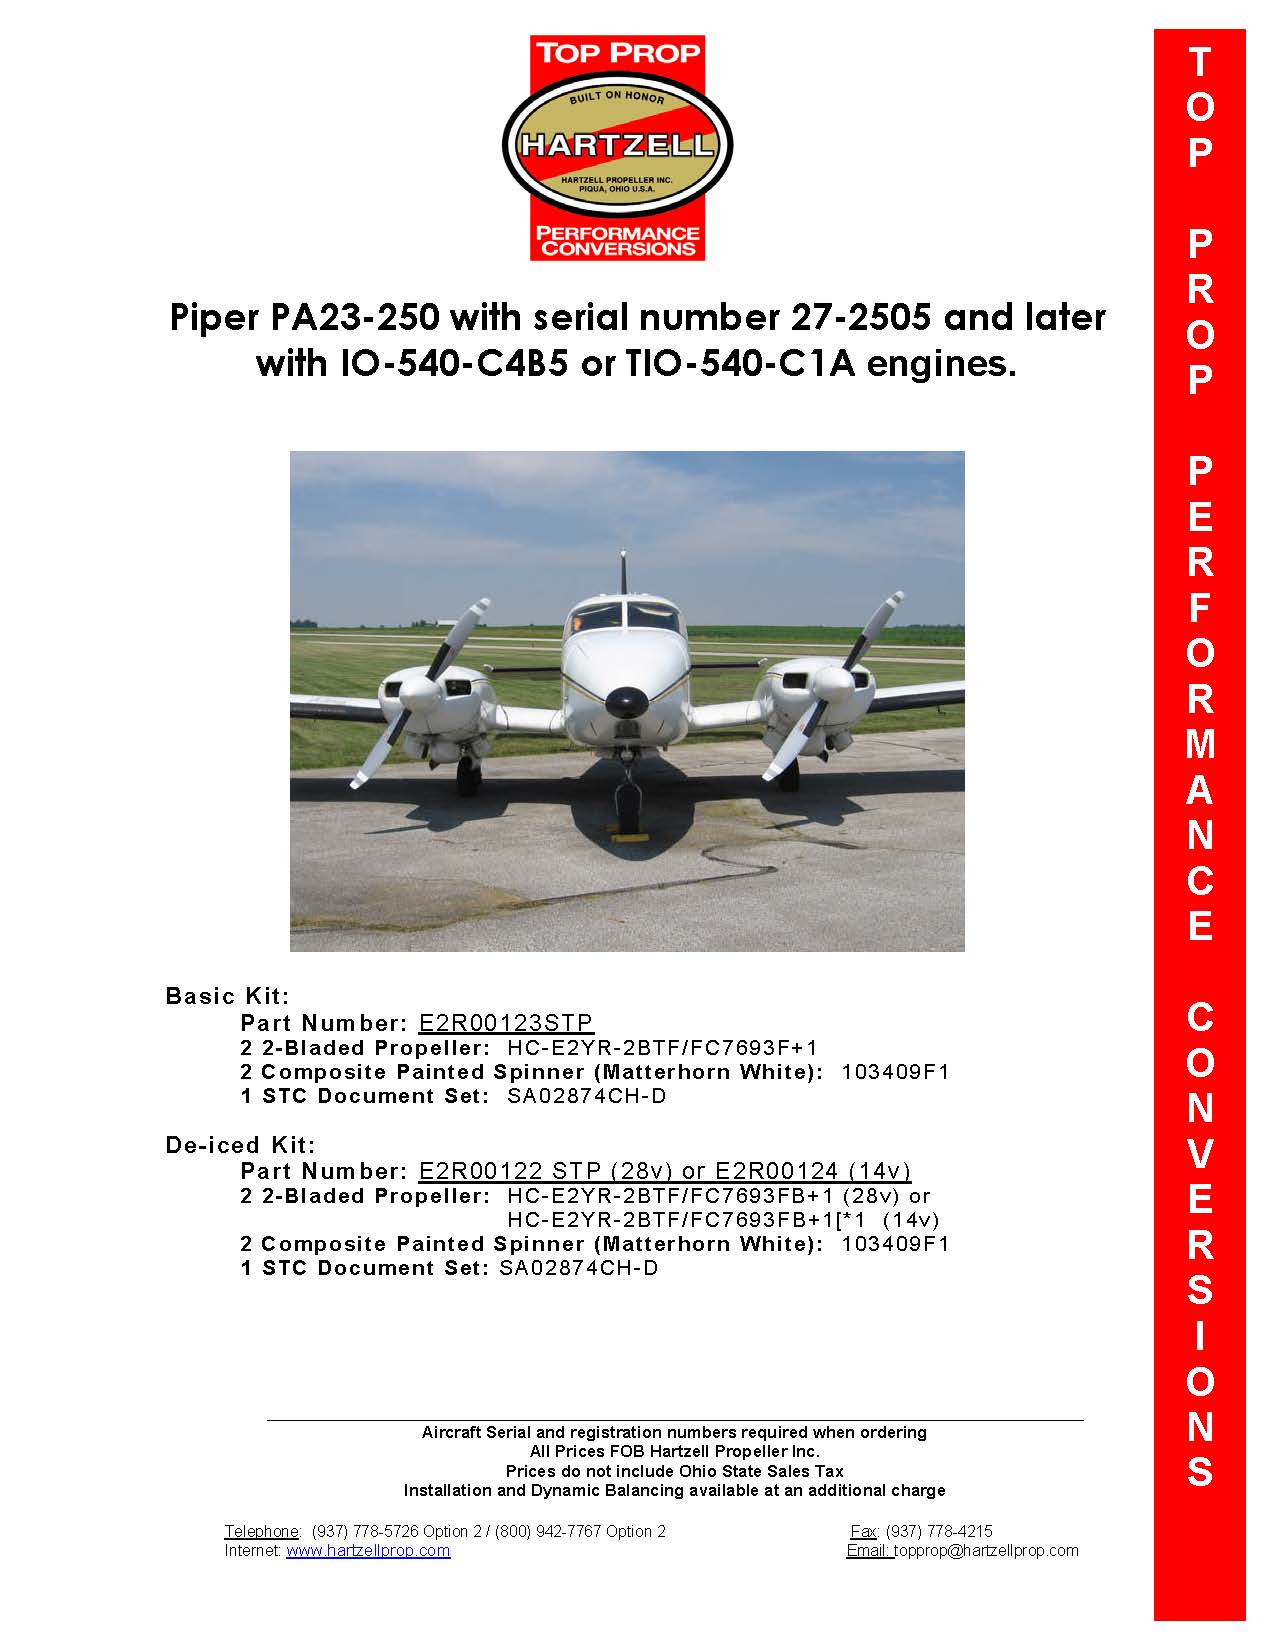 PIPER-AZTEC-PA23-250-E2R00123STP-PAGE-1